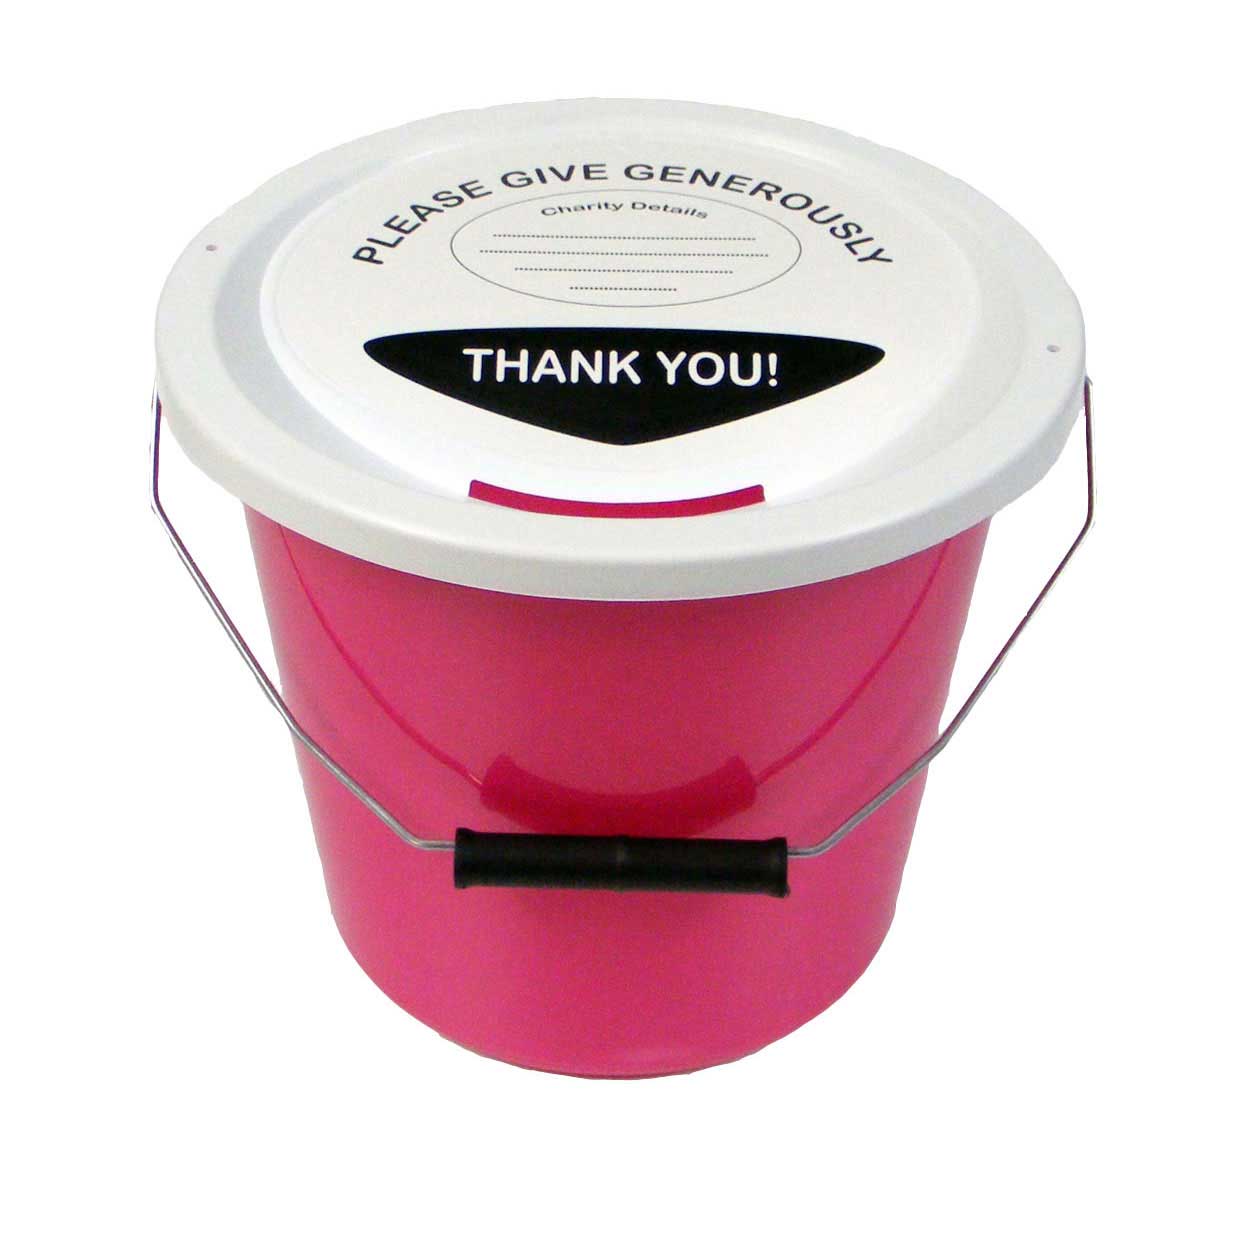 Charity fundraising buckets